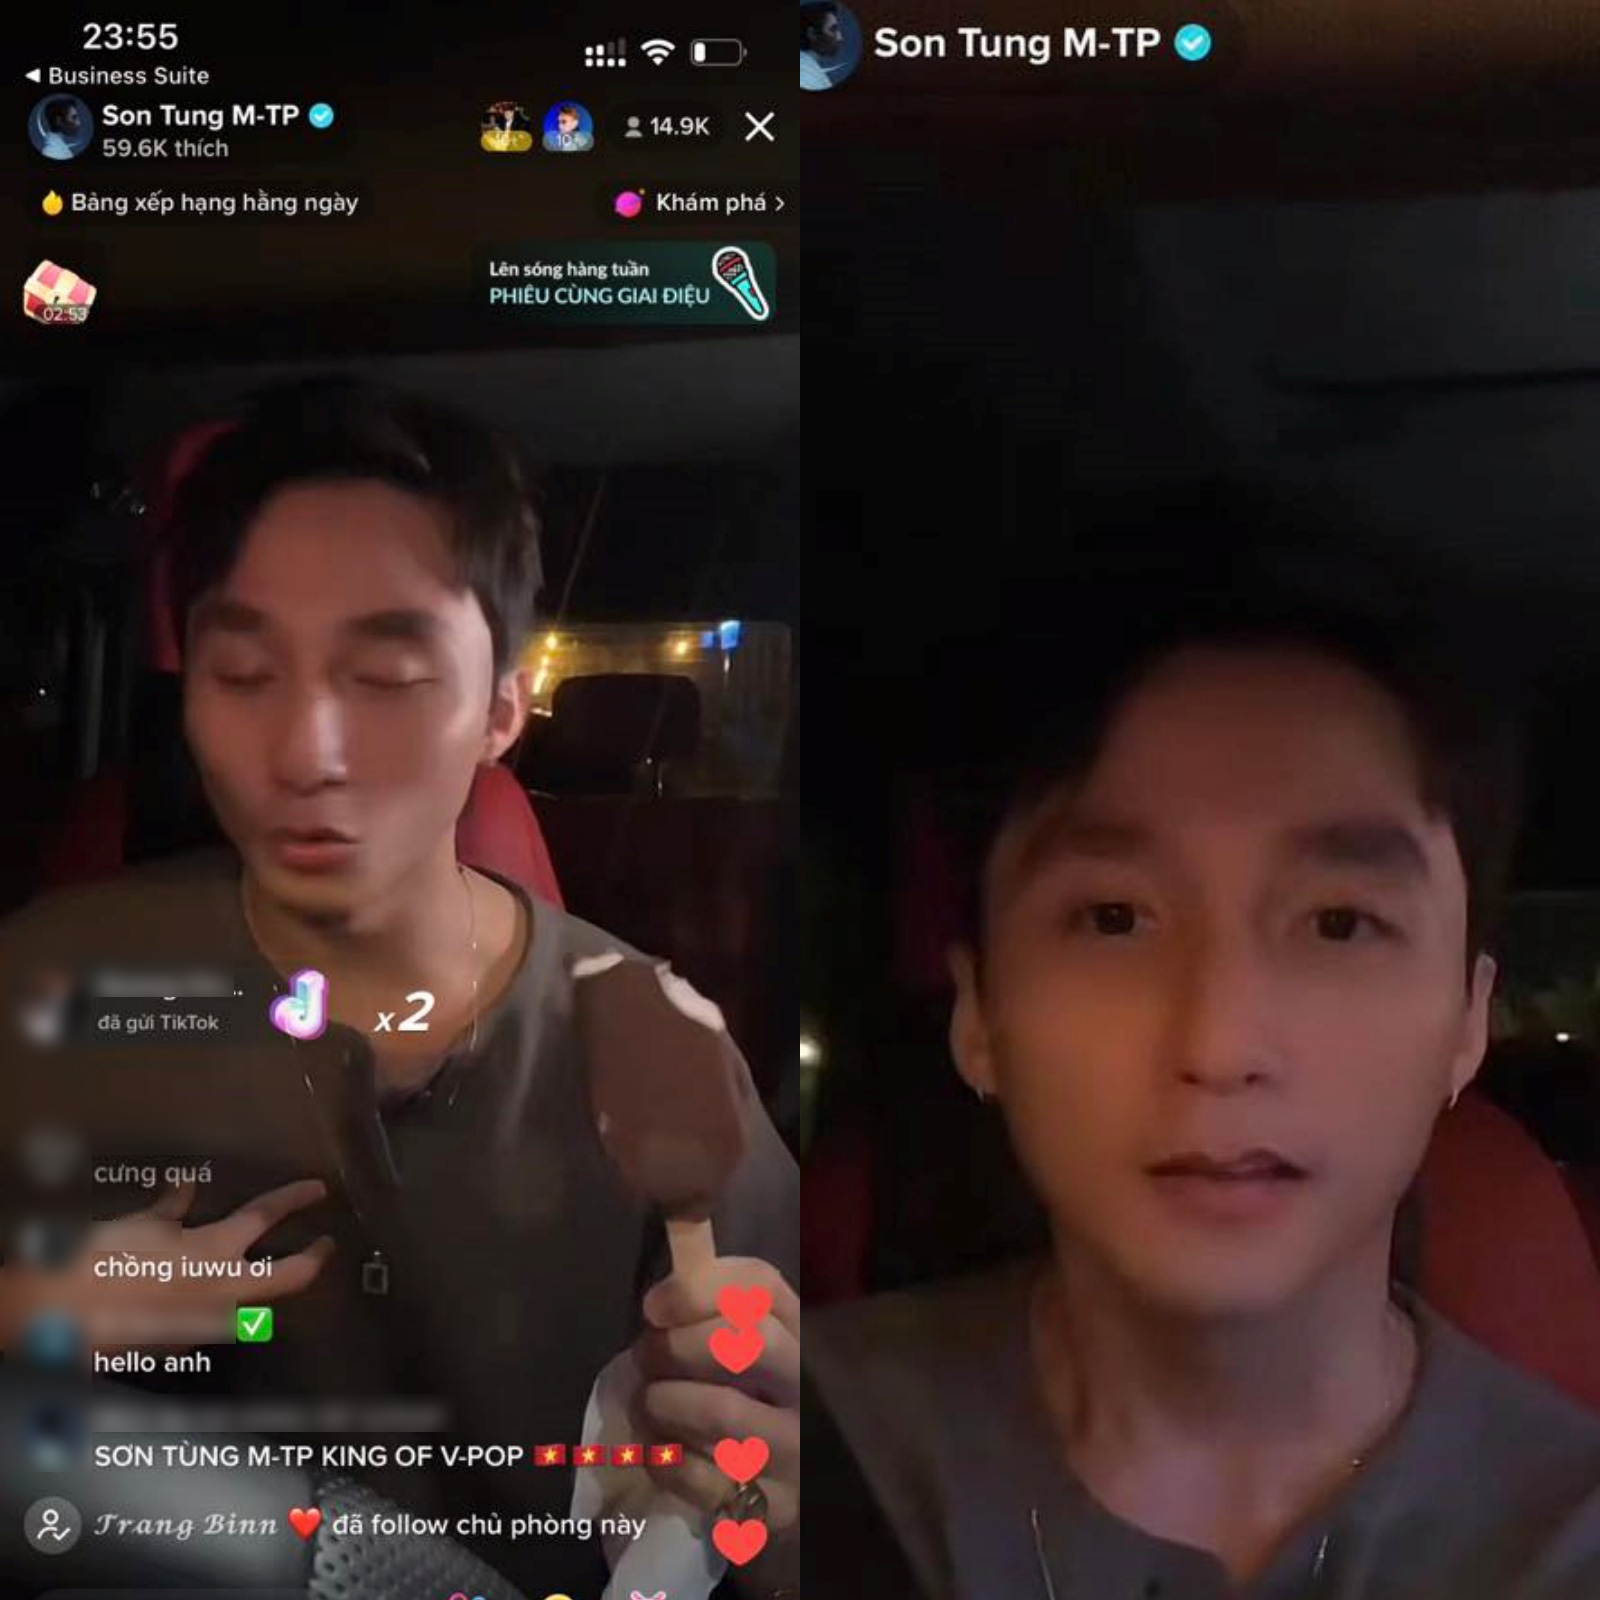 Livestream của Sơn Tùng M-TP